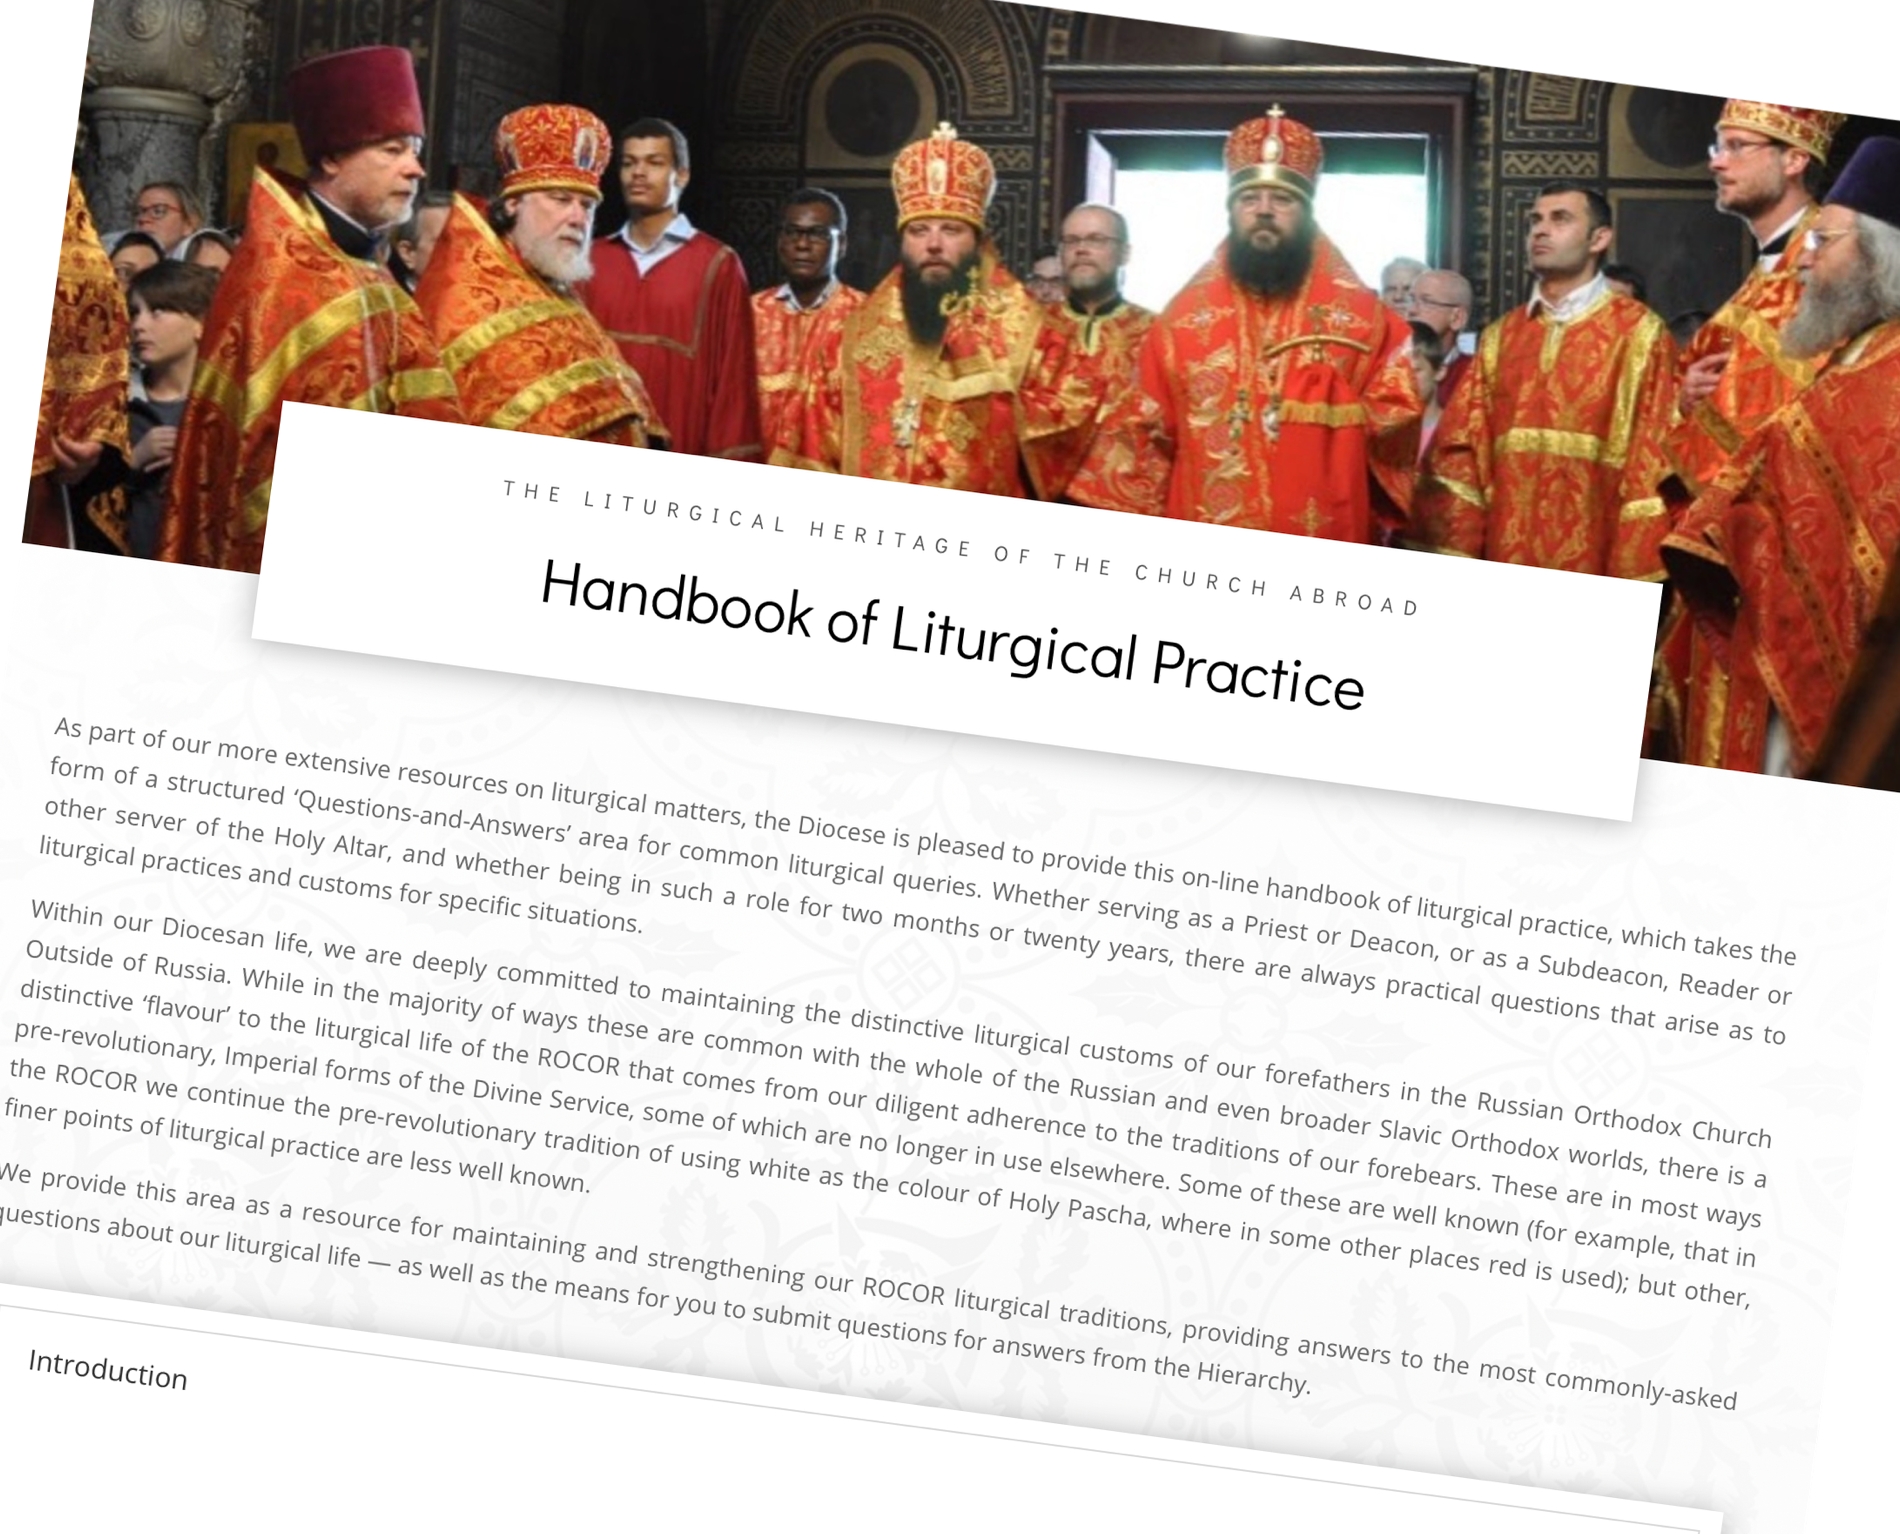 Le manuel des pratiques liturgiques de l’Église orthodoxe russe hors-frontières est publié en ligne, en russe et en anglais